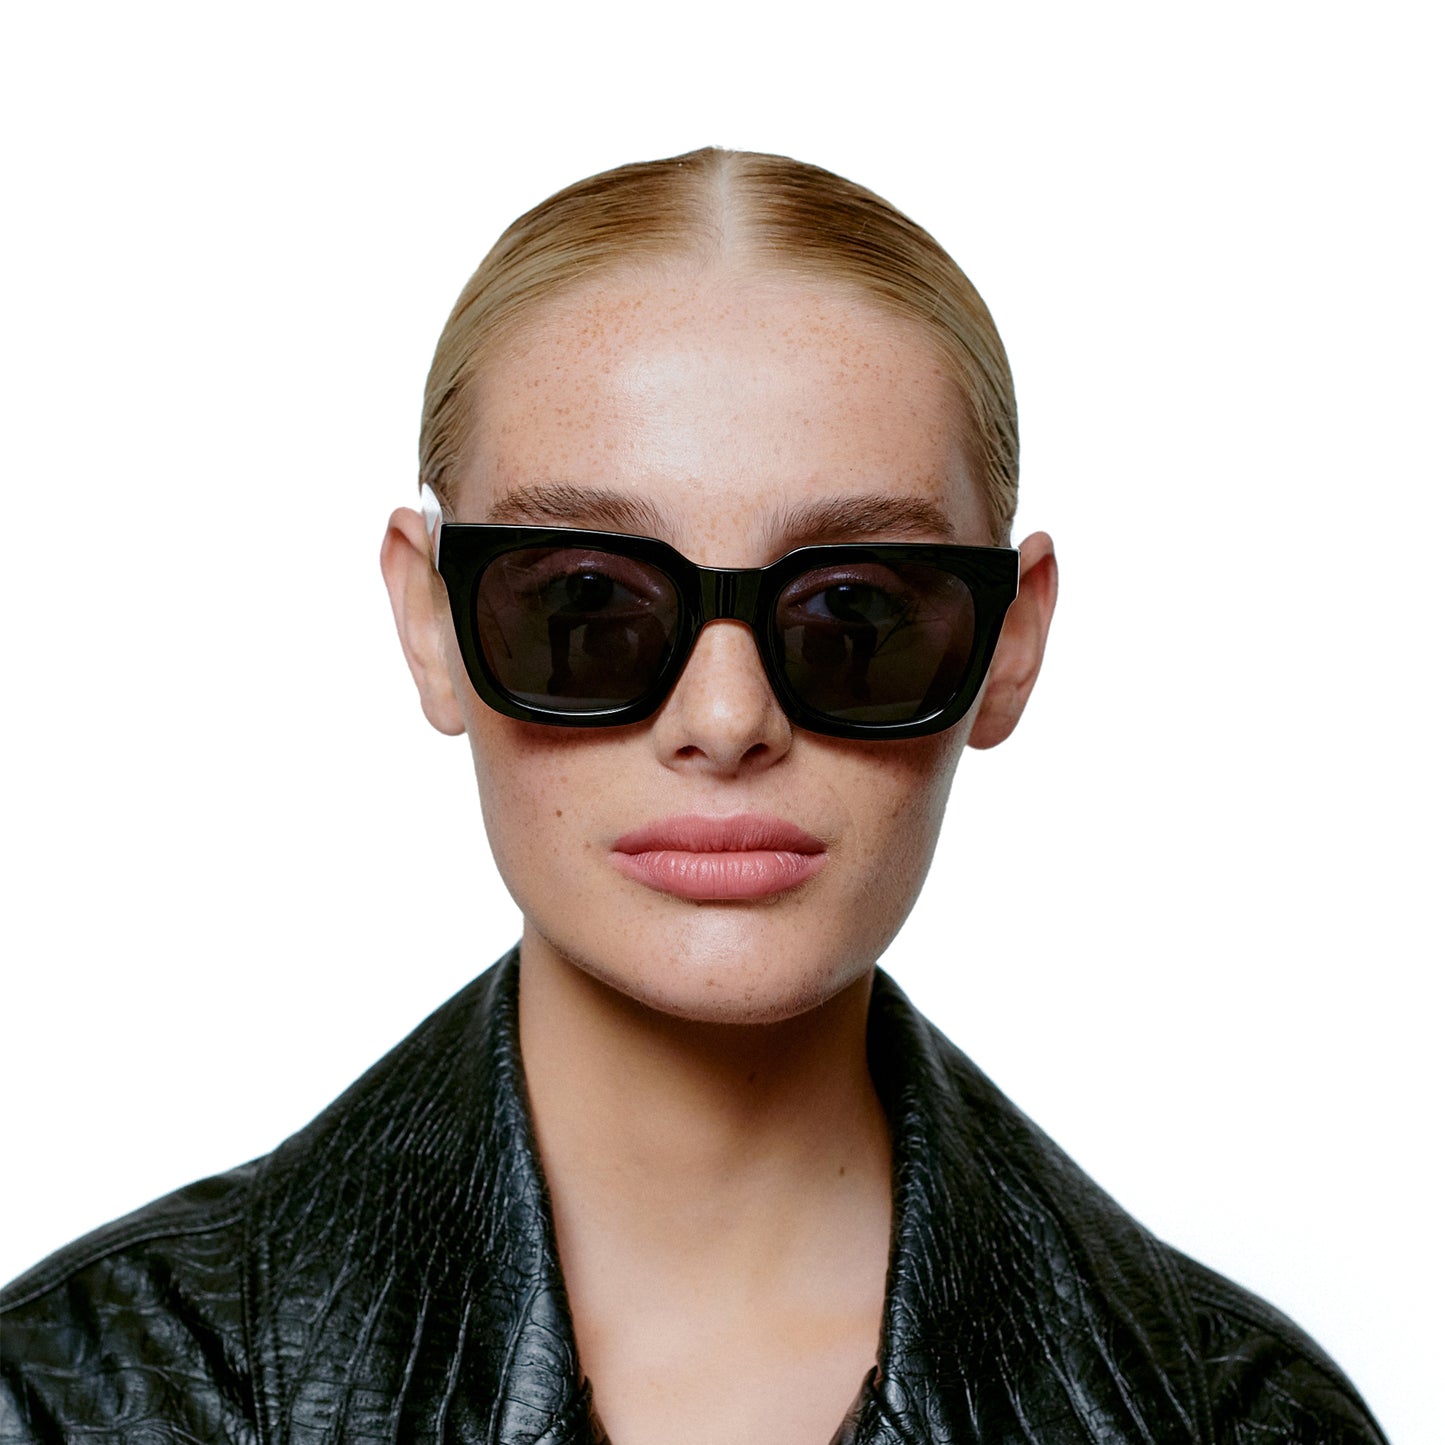 A.Kjaerbede Nancy Sunglasses in Black color